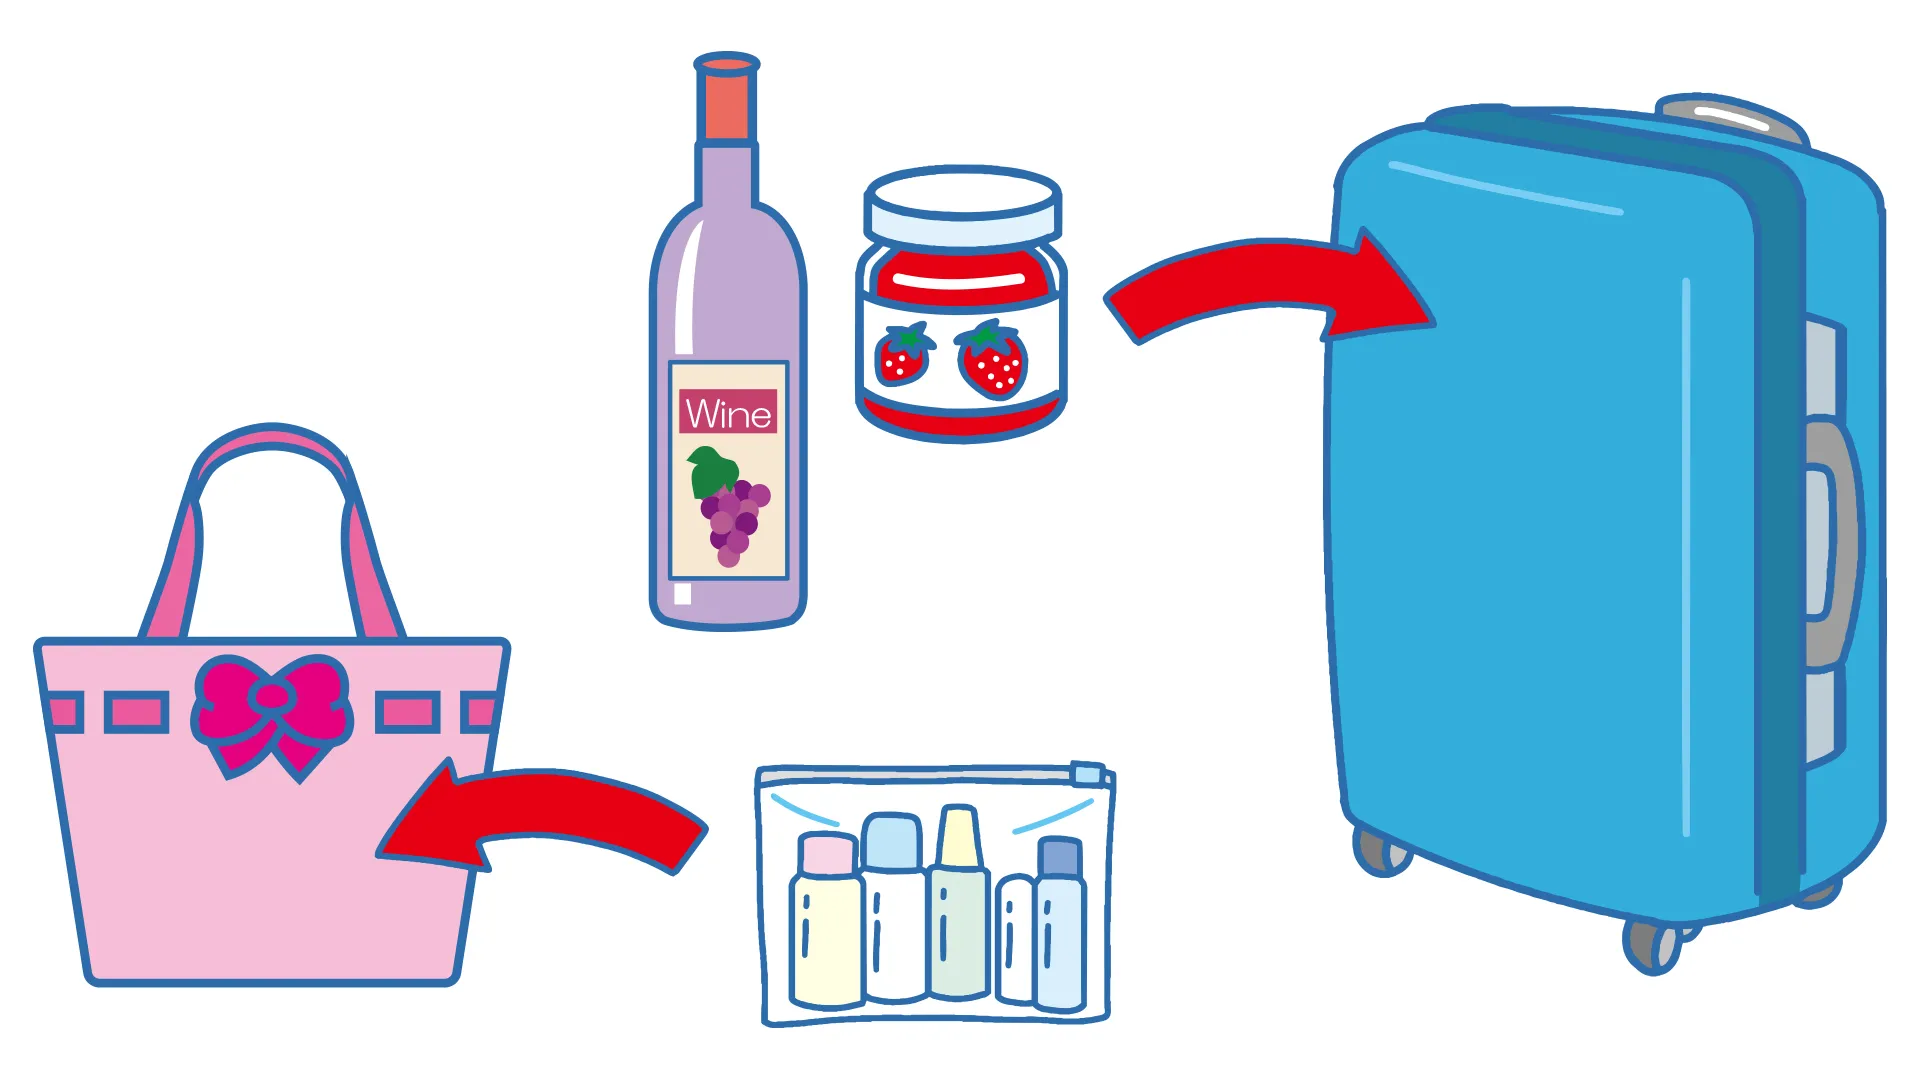 化粧品はジッパー付きの透明プラスチック袋に入れてバッグへ。ジャムやワインなど100ミリリットルを超える液体は預け手荷物へ。